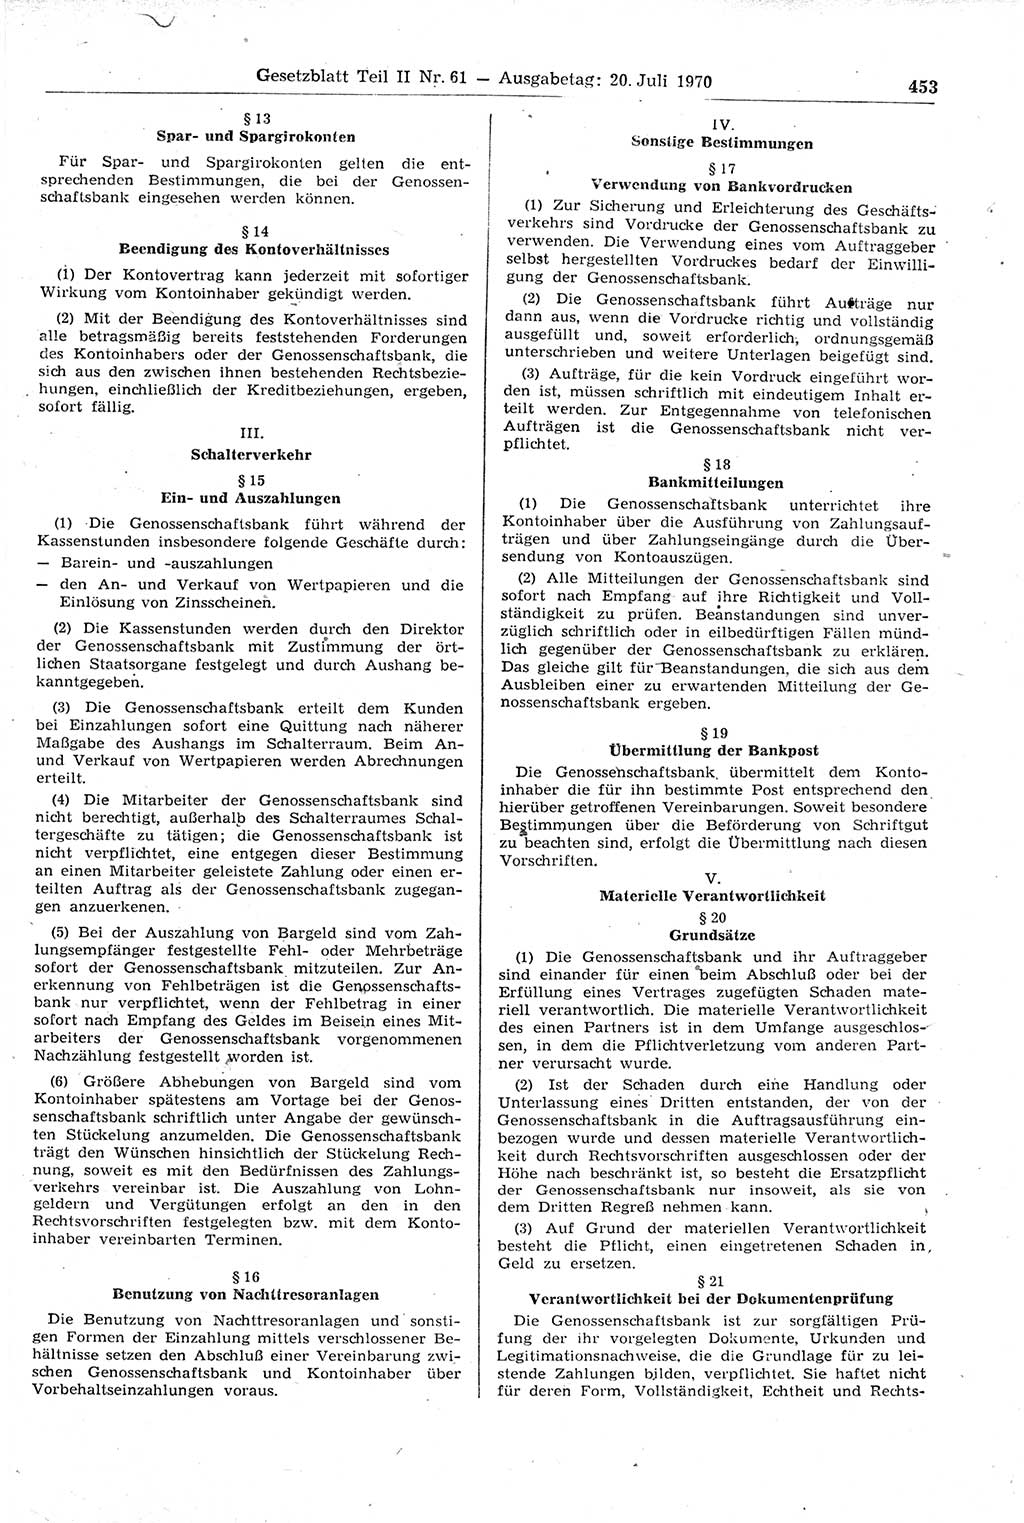 Gesetzblatt (GBl.) der Deutschen Demokratischen Republik (DDR) Teil ⅠⅠ 1970, Seite 453 (GBl. DDR ⅠⅠ 1970, S. 453)